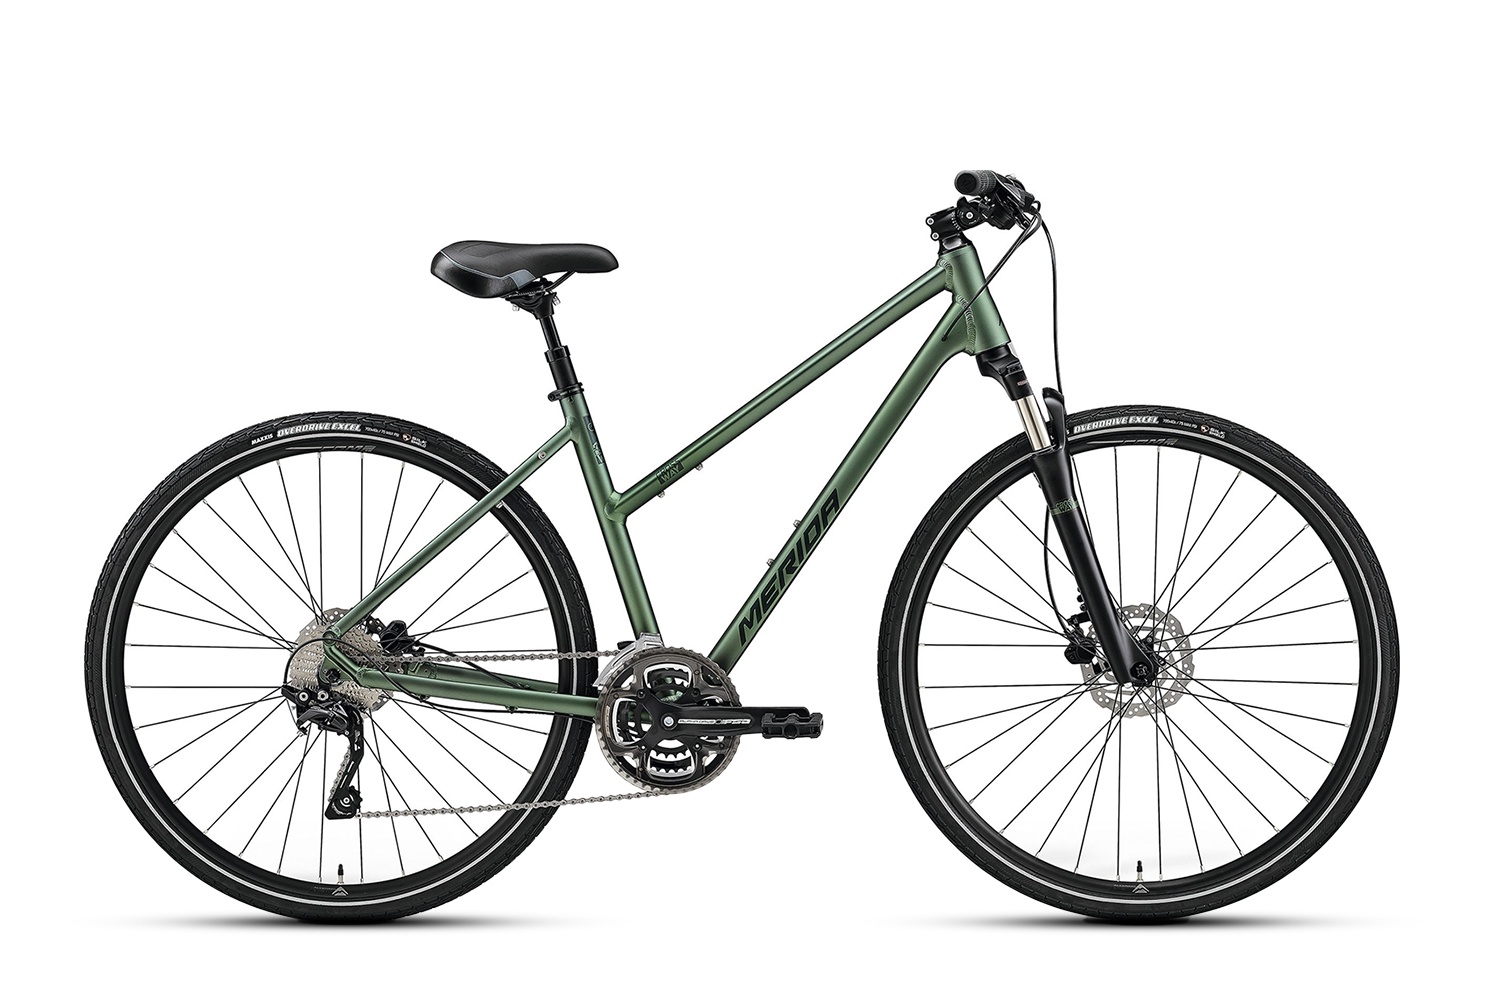 Велосипед Merida Crossway 300 S-47, матовый зелёный